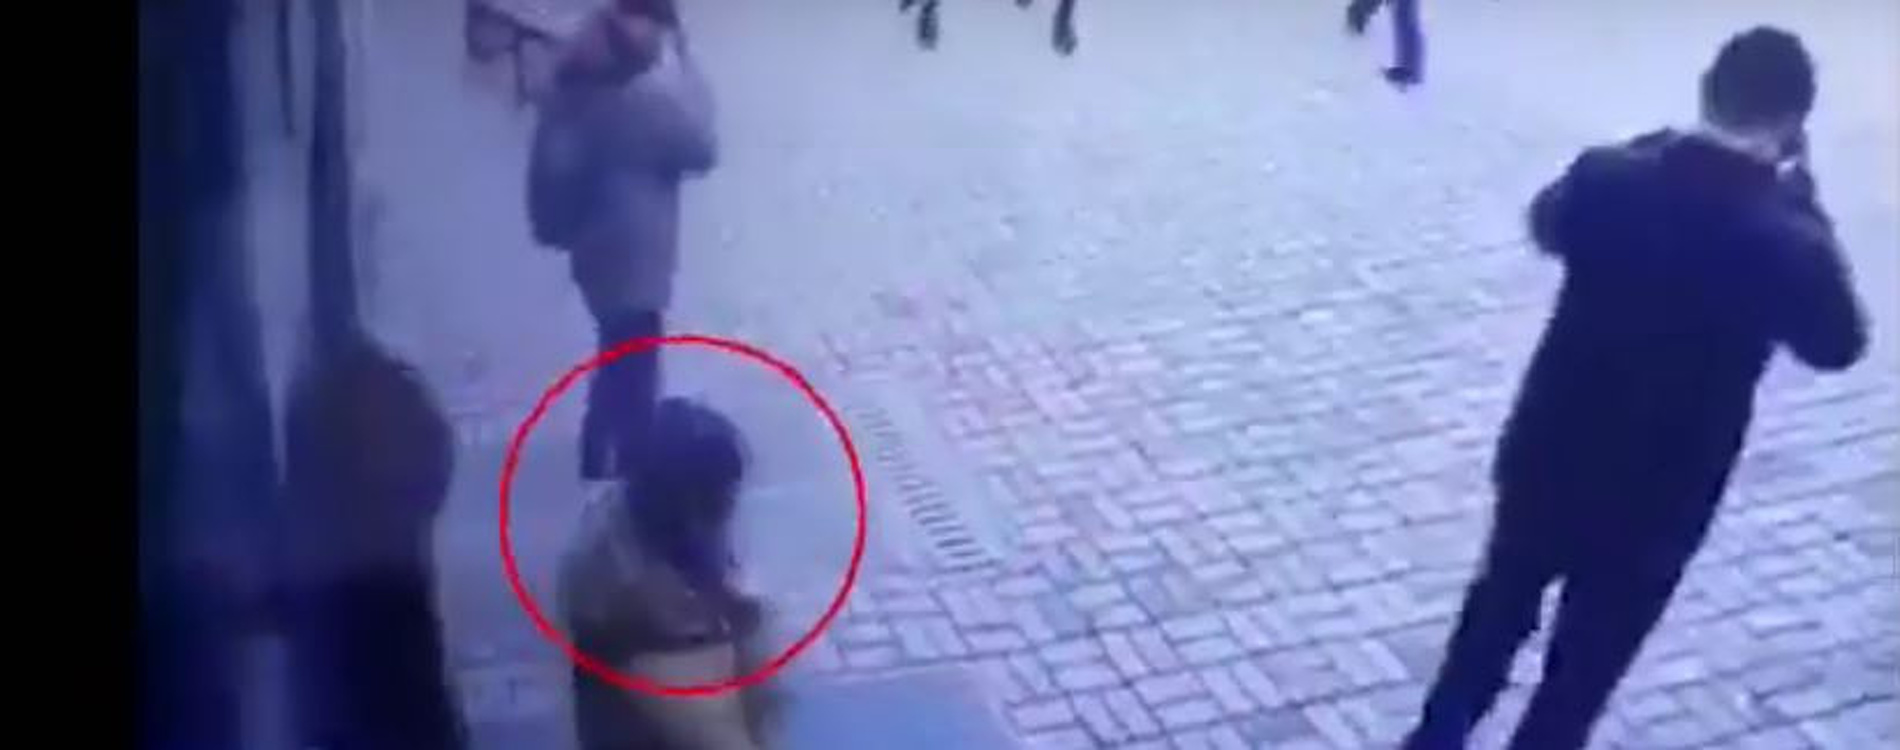 В Бишкеке парень выследил женщину, снимавшую деньги со счета, и ограбил ее возле подъезда — Today.kg